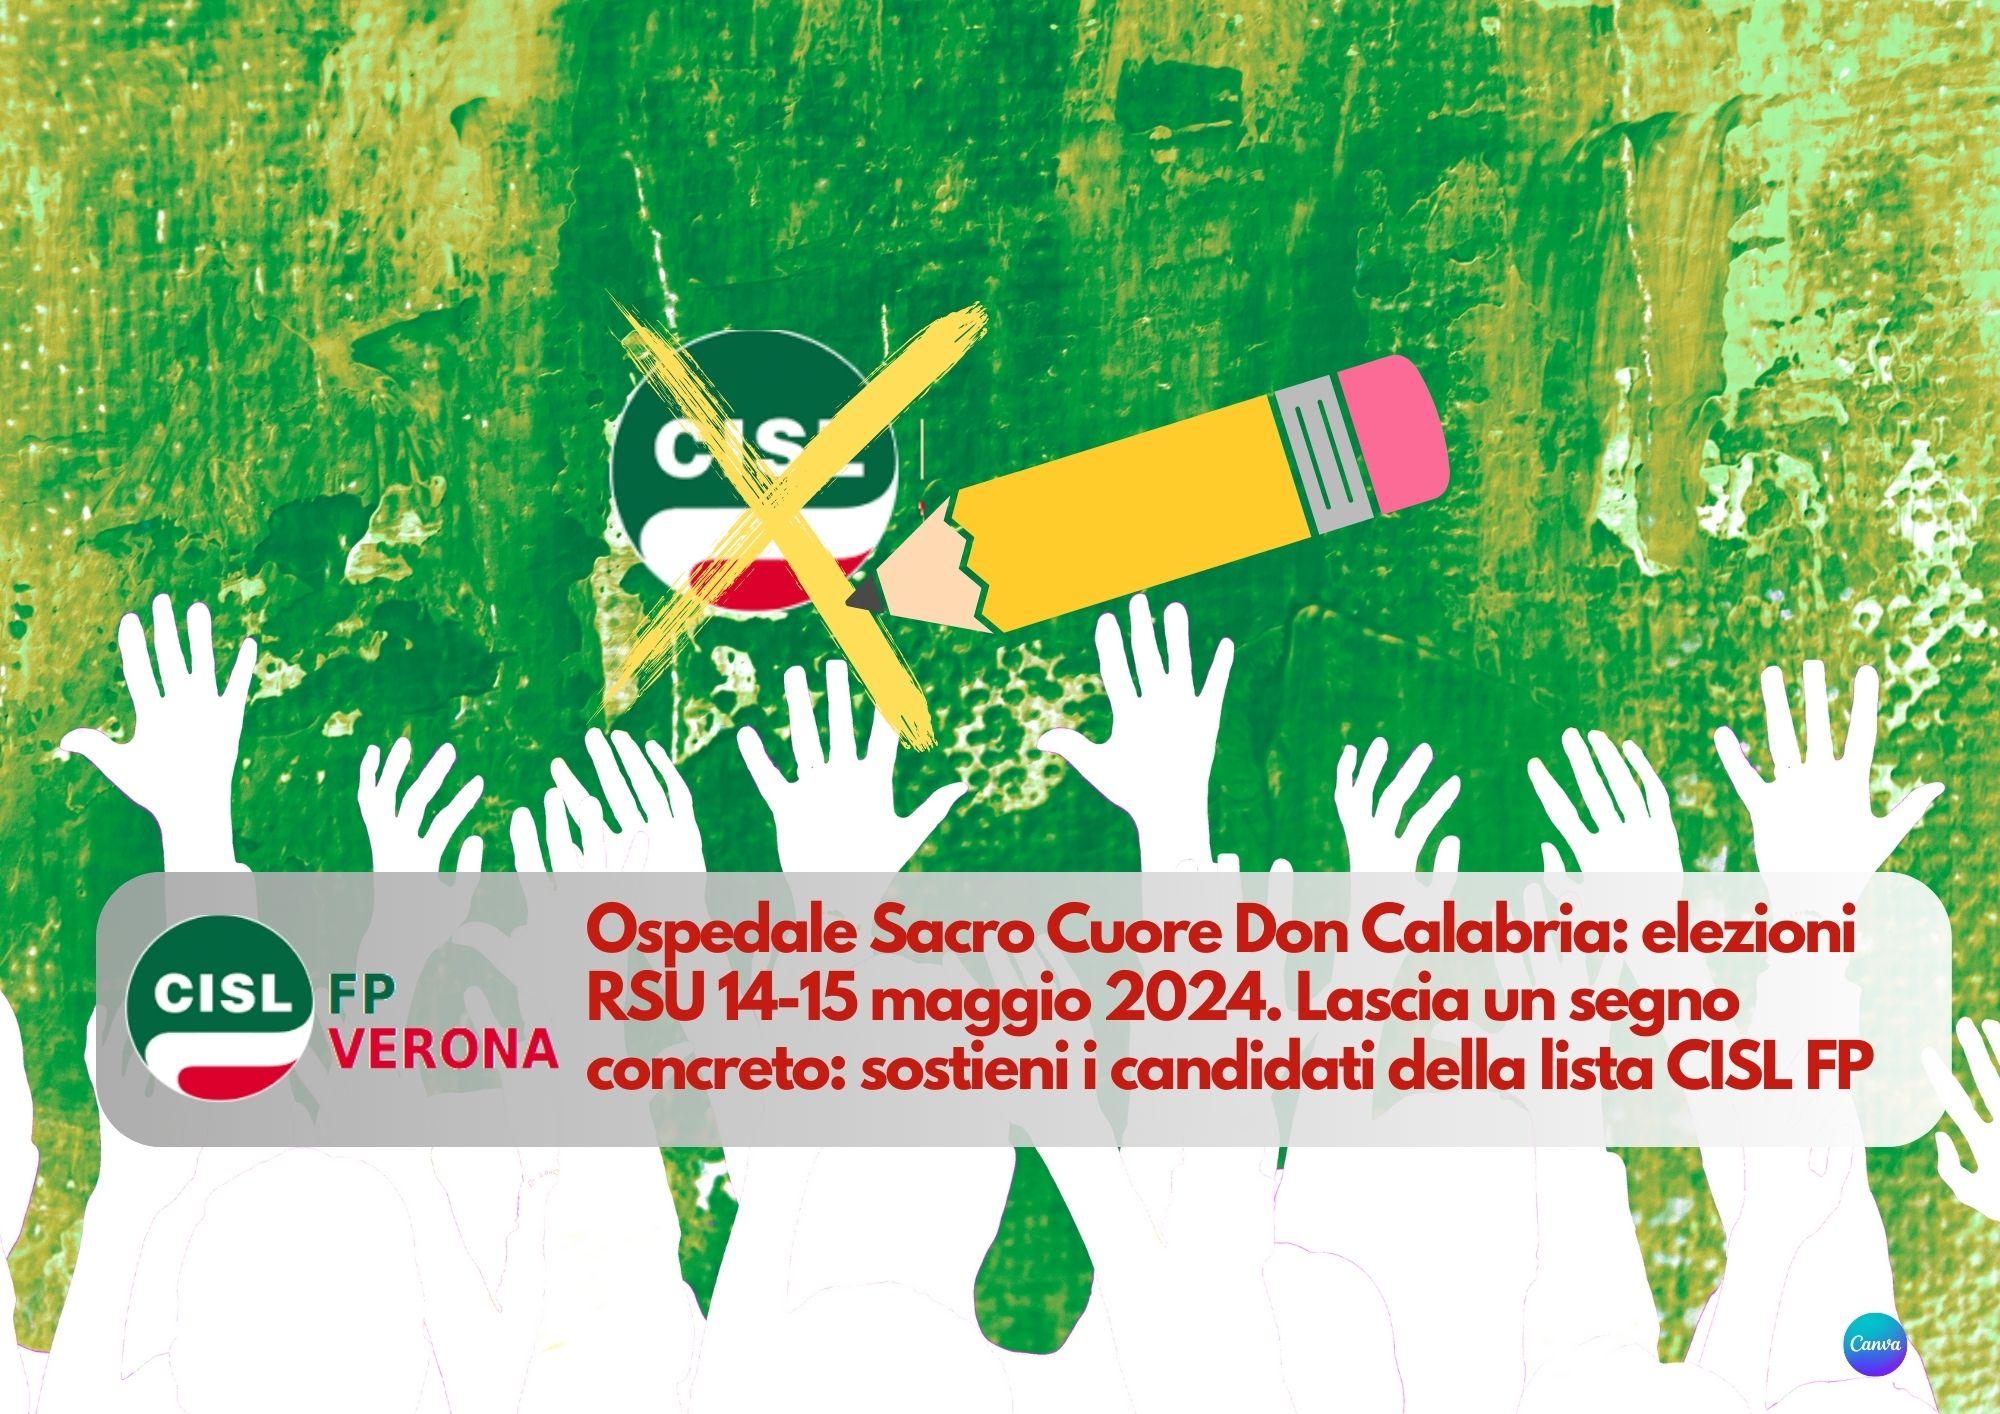 CISL FP Verona. Ospedale Sacro Cuore Don Calabria: elezioni RSU 14-15 maggio 2024